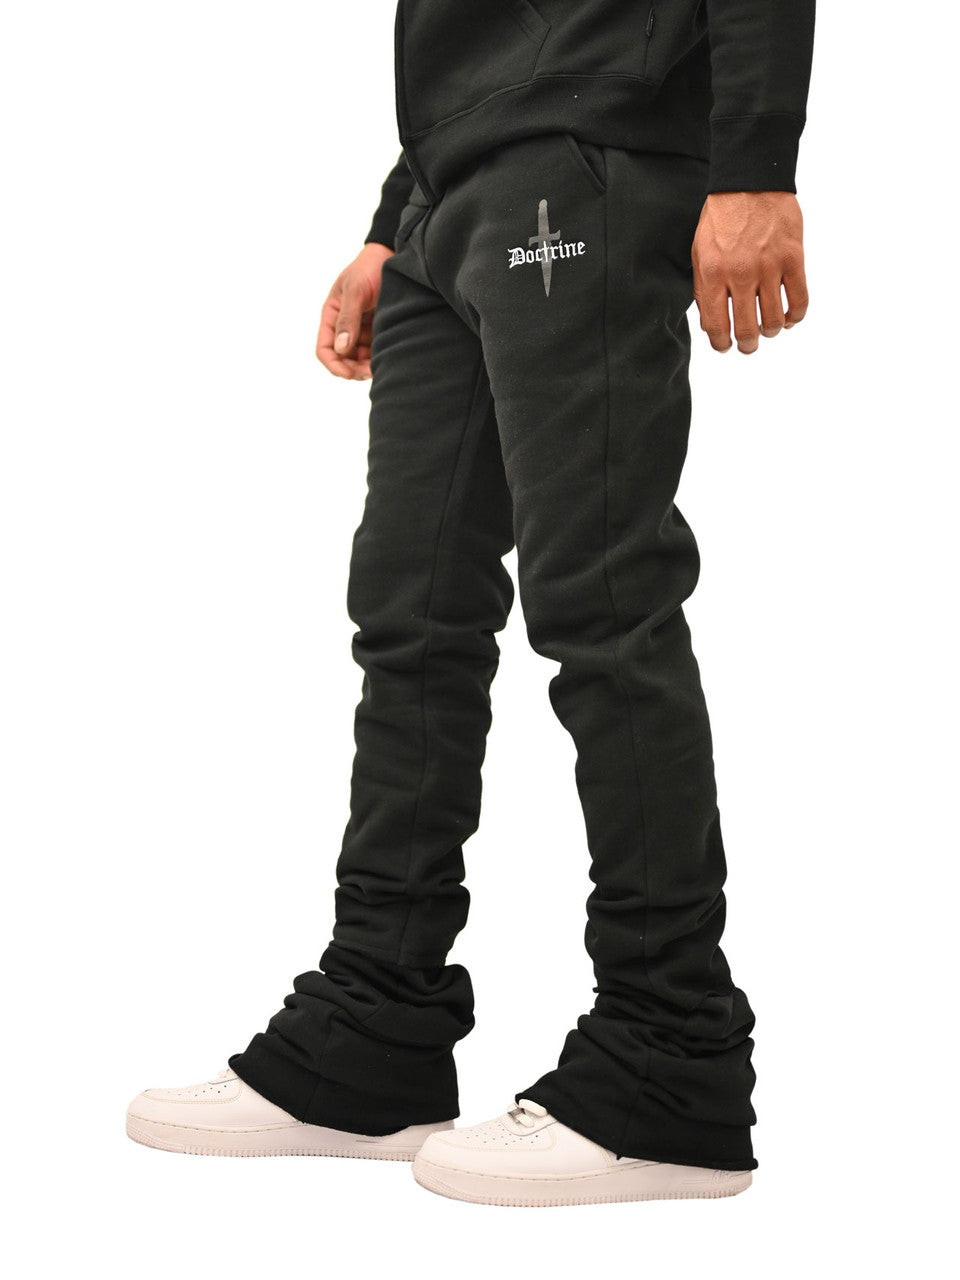 Rockstar Original - Sniper Black Super Stacked Flare Jeans (Black) – Octane